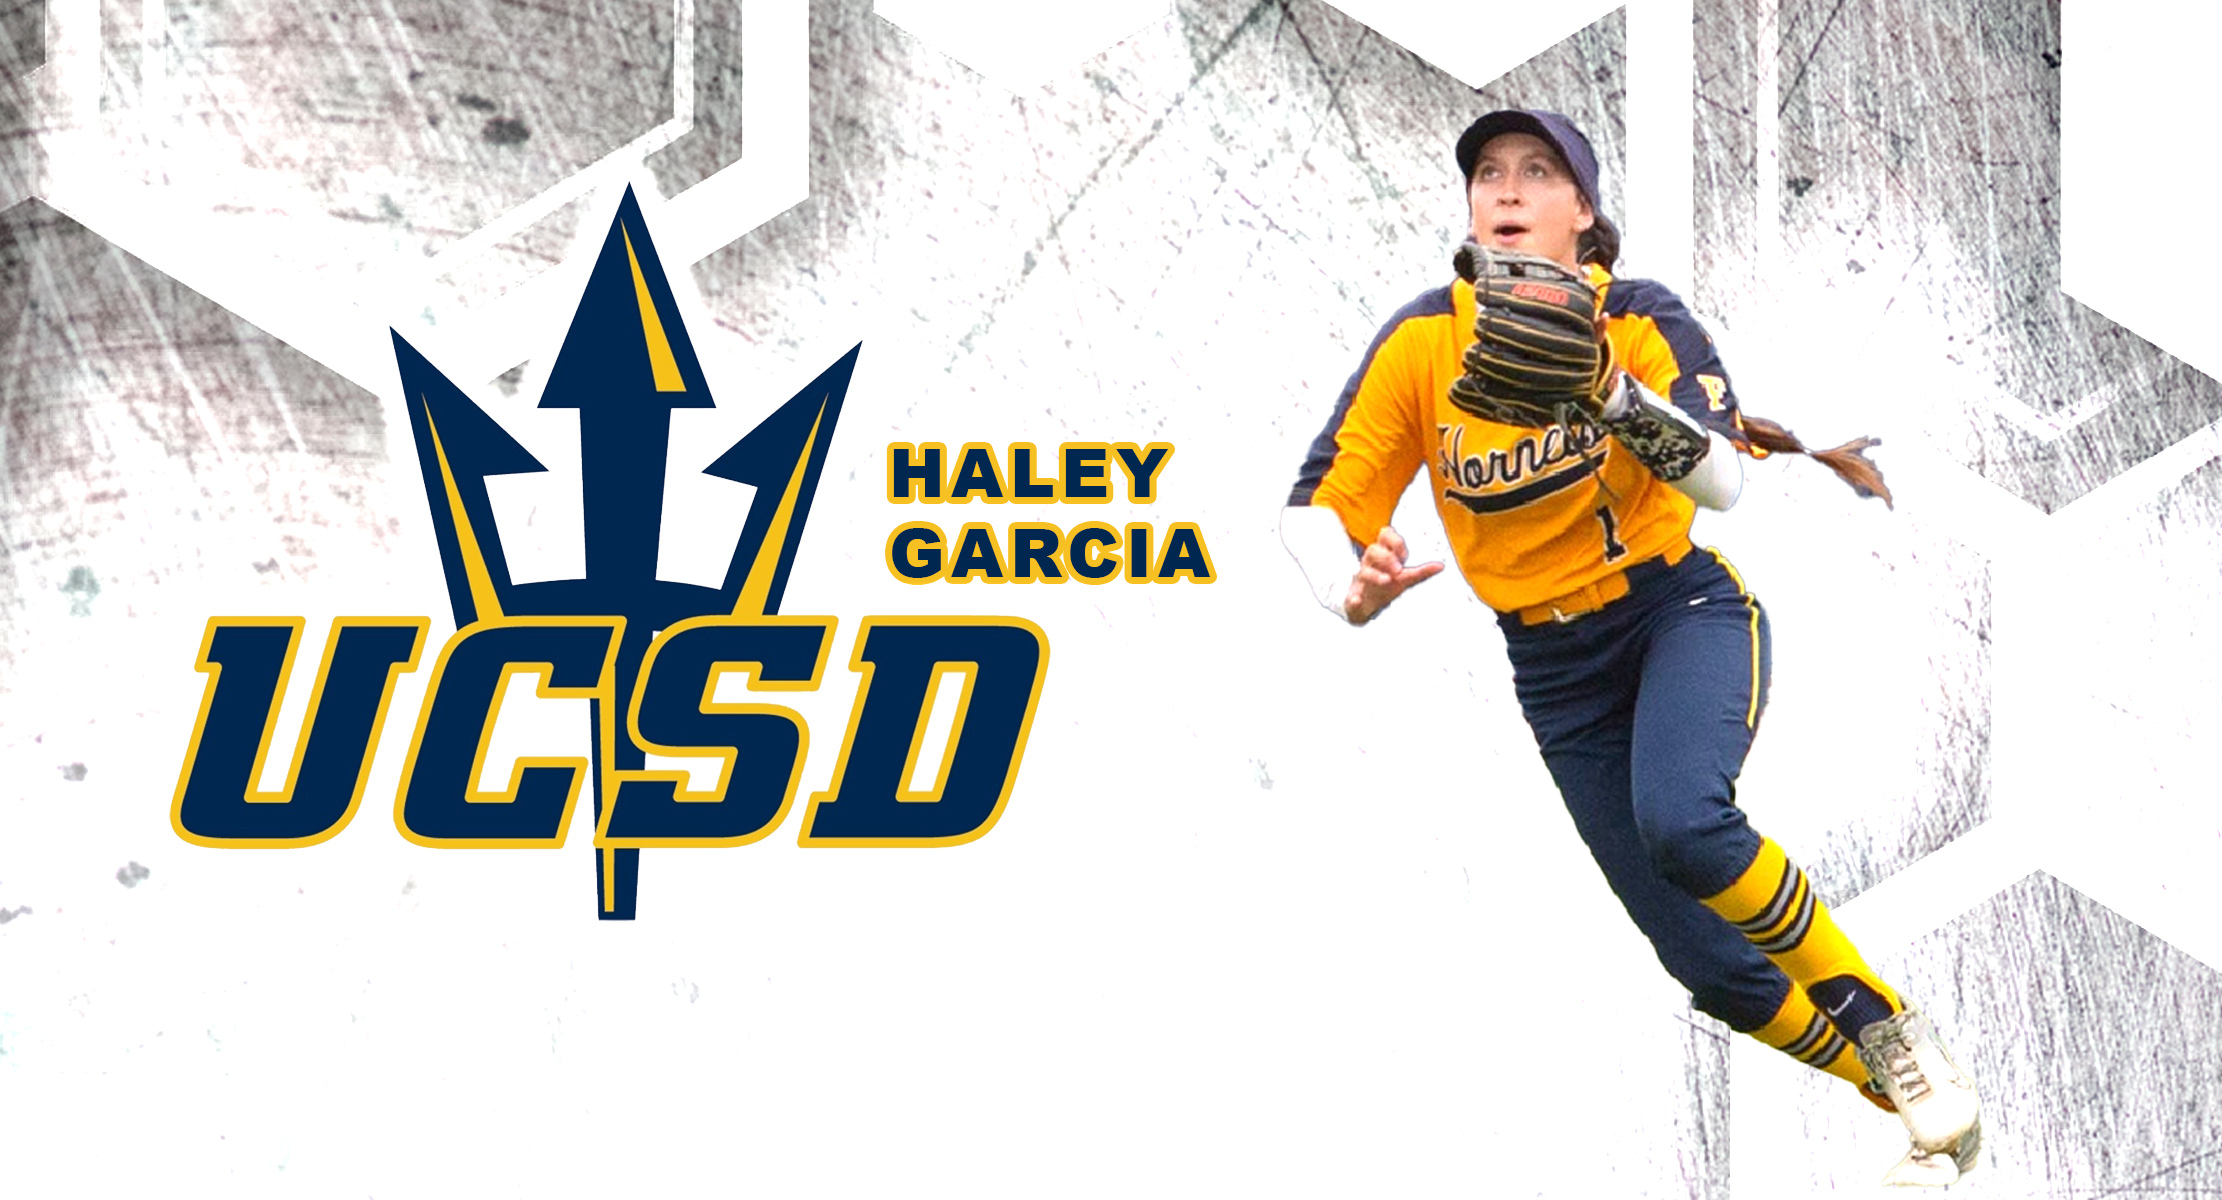 HALEY GARCIA SIGNS WITH UC SAN DIEGO